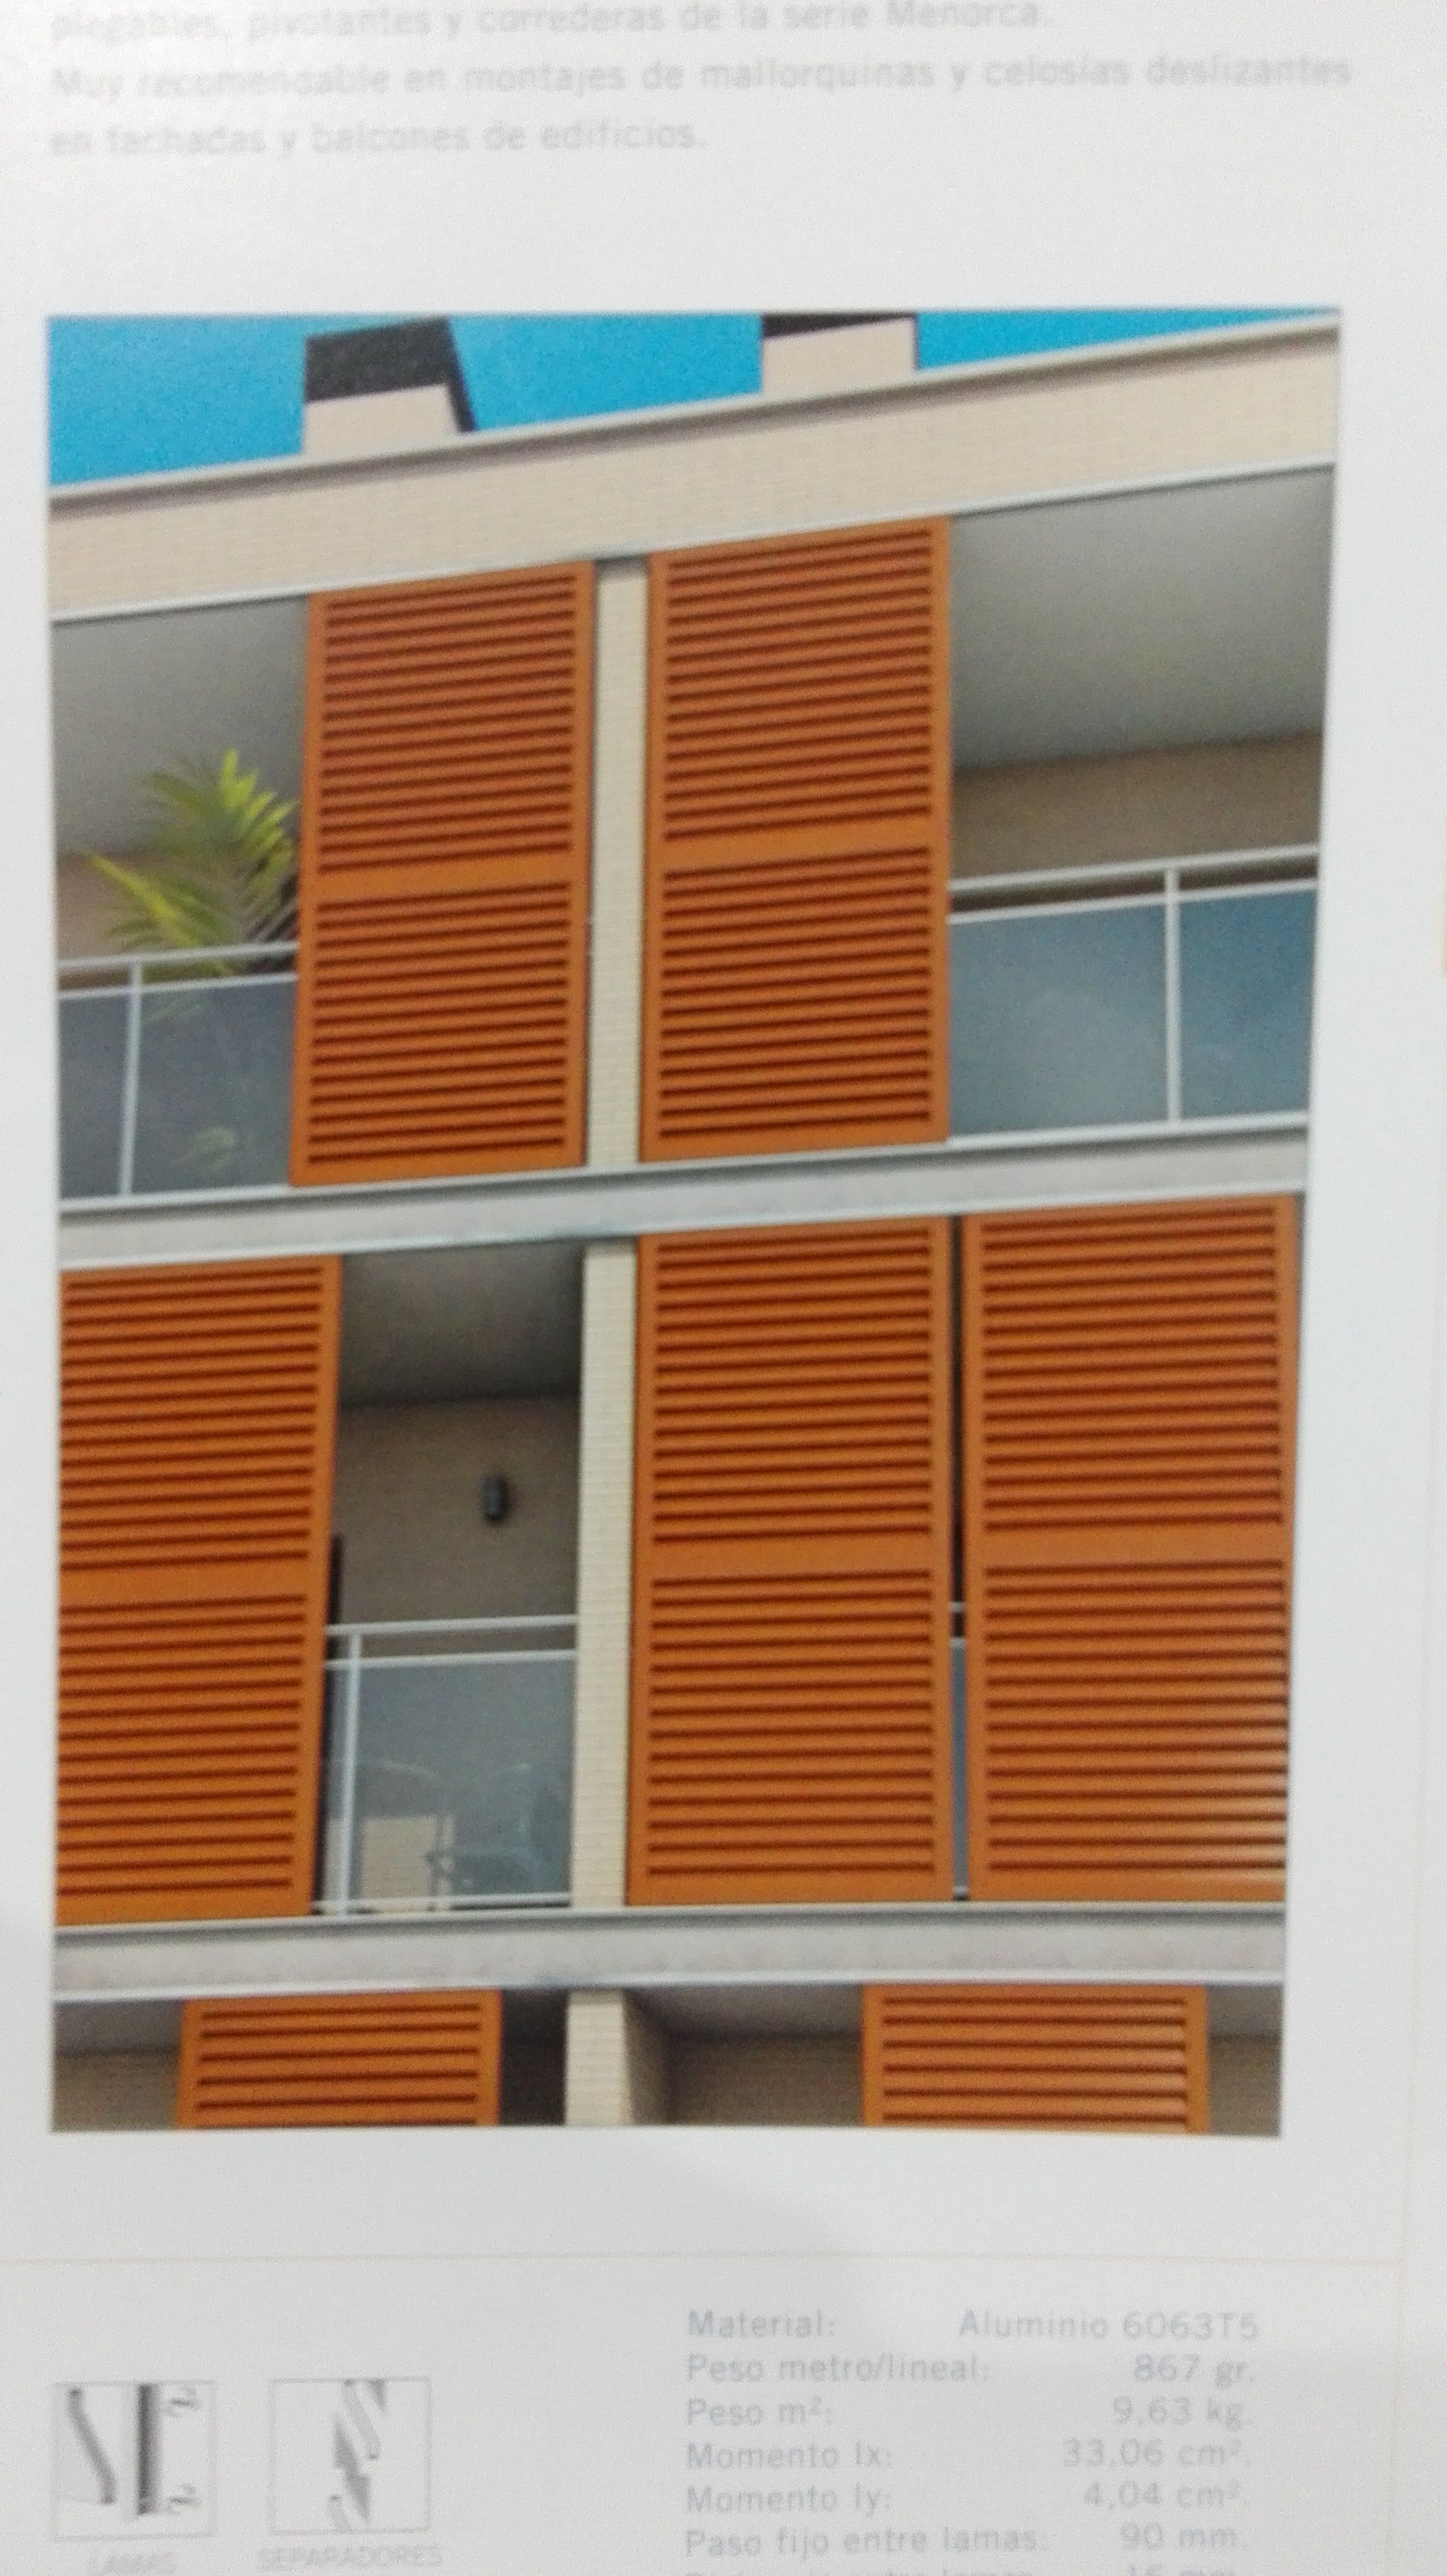 Foto 3 de Ventanas y puertas de PVC y aluminio en Vilassar de Mar | Disseny Amb Vidre